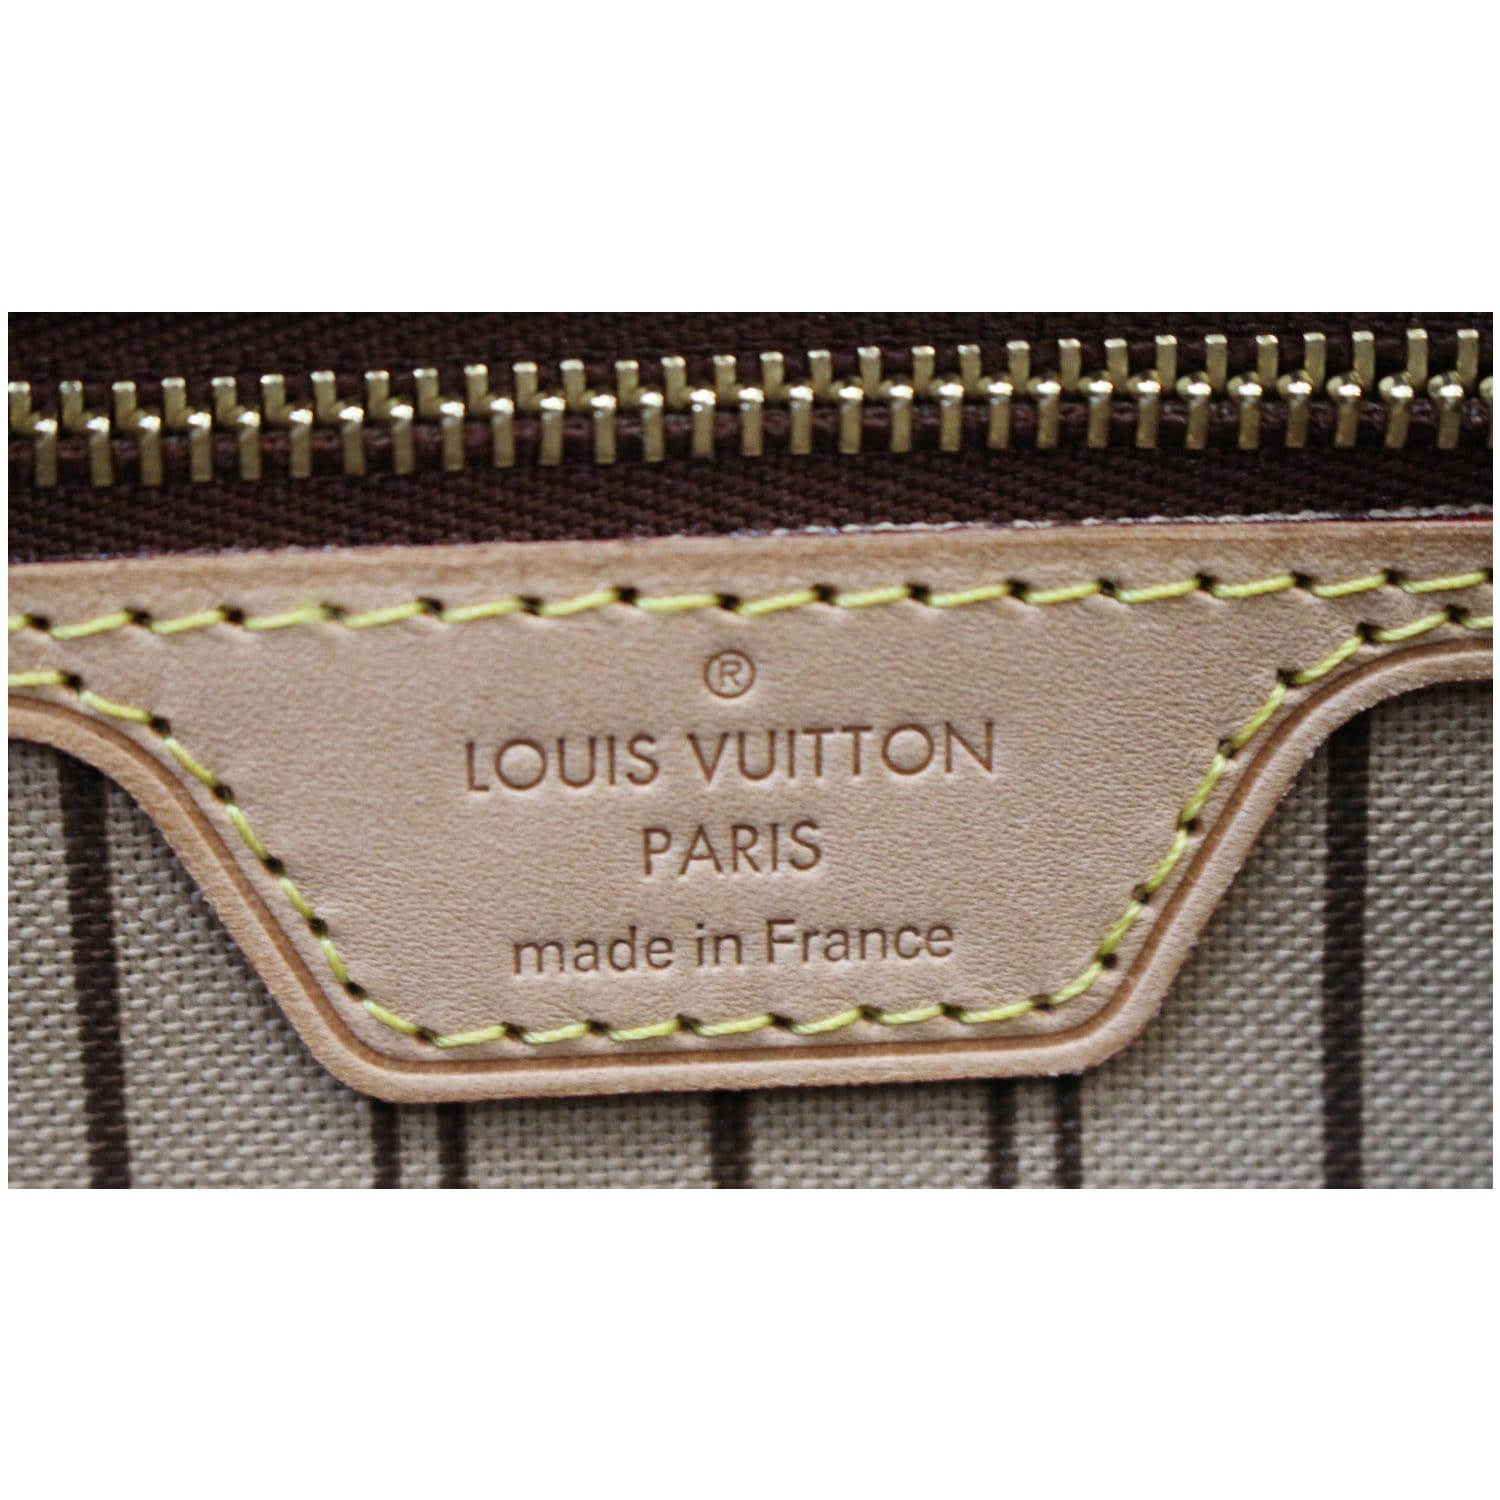 Louis Vuitton, Bags, Authentic Louis Vuitton Neverfull Pm